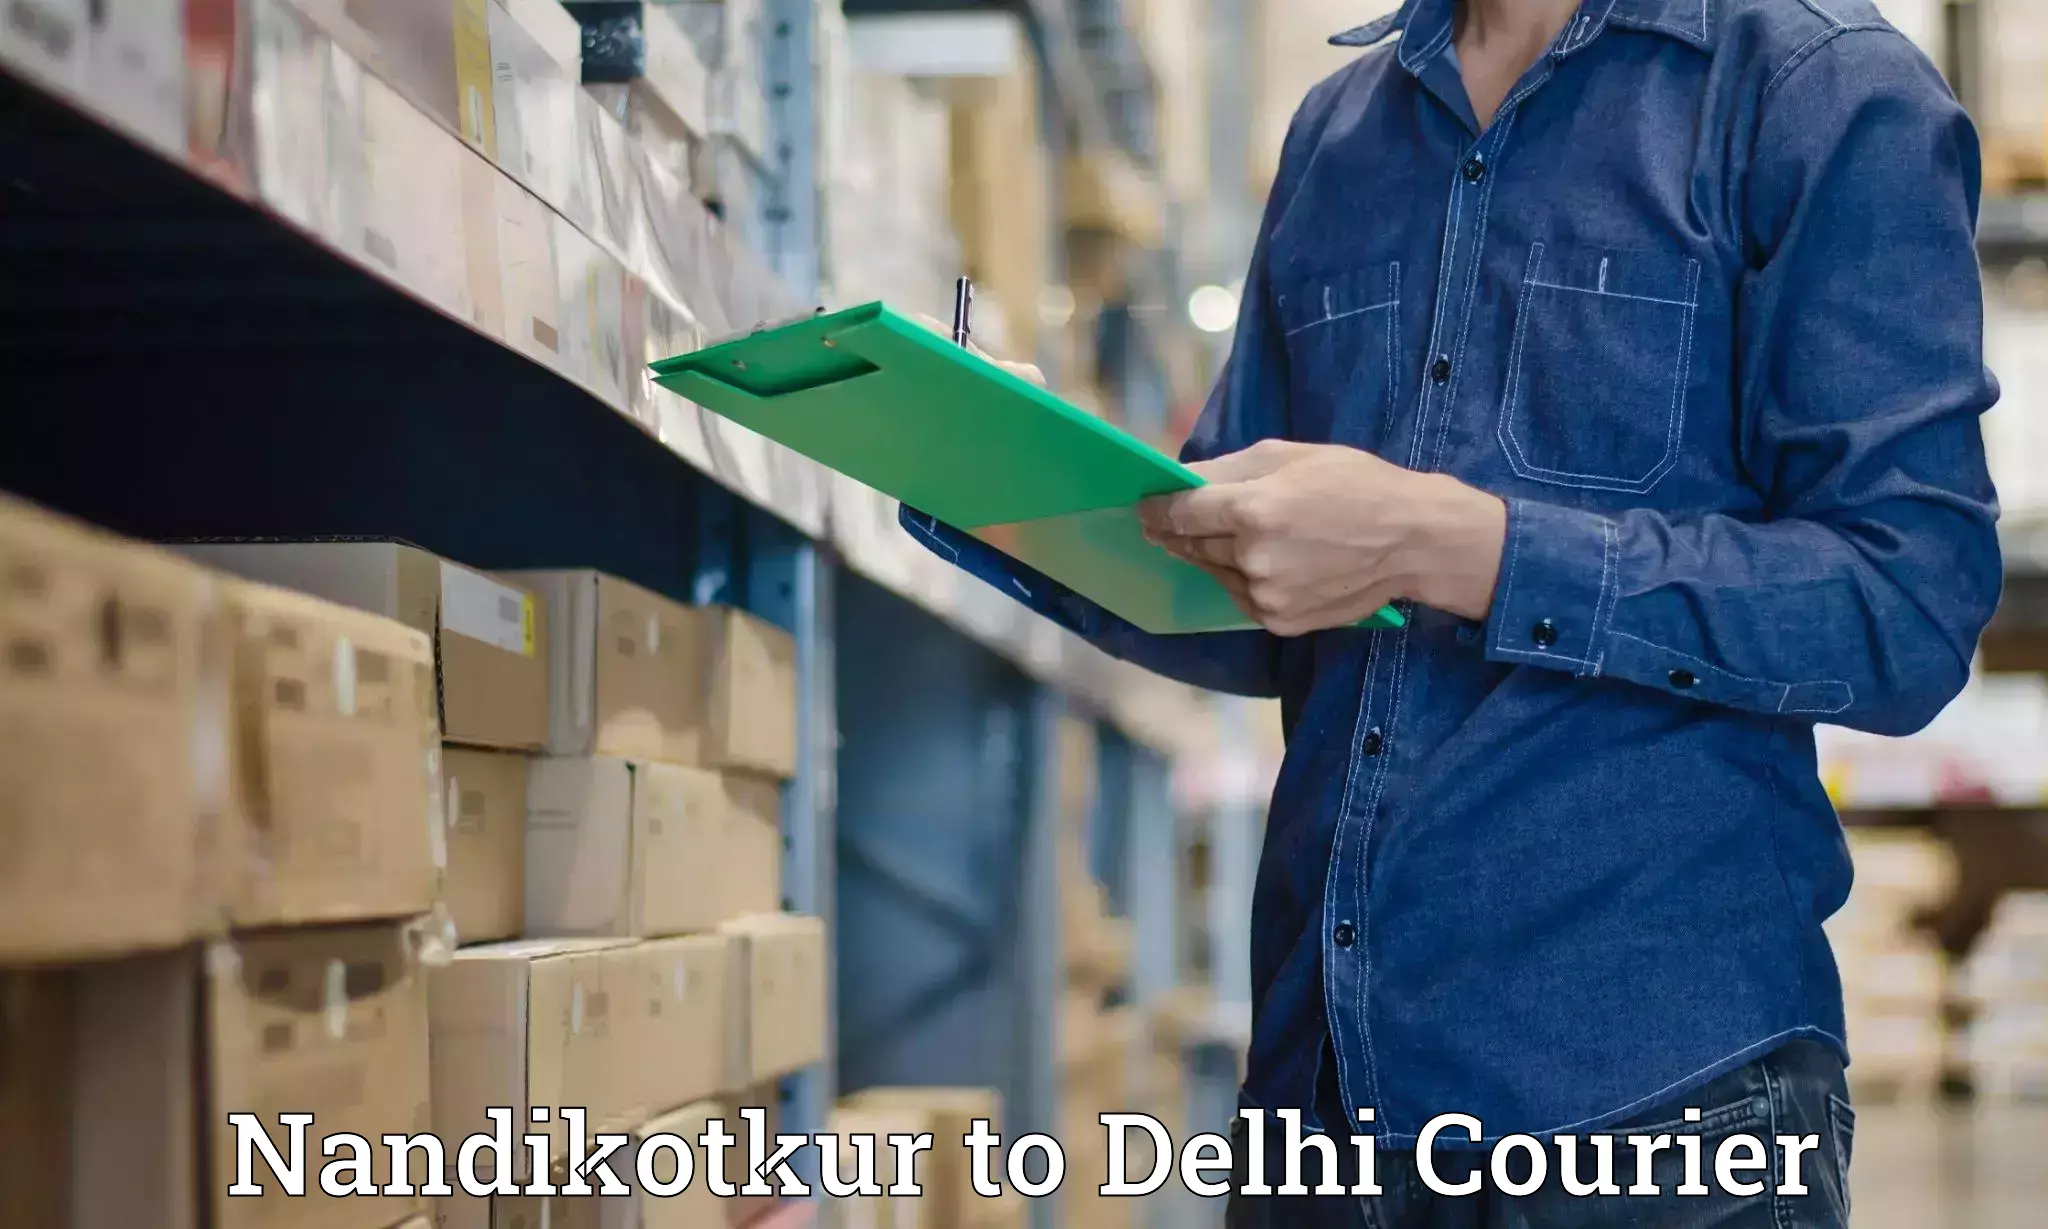 Quick dispatch service in Nandikotkur to Delhi